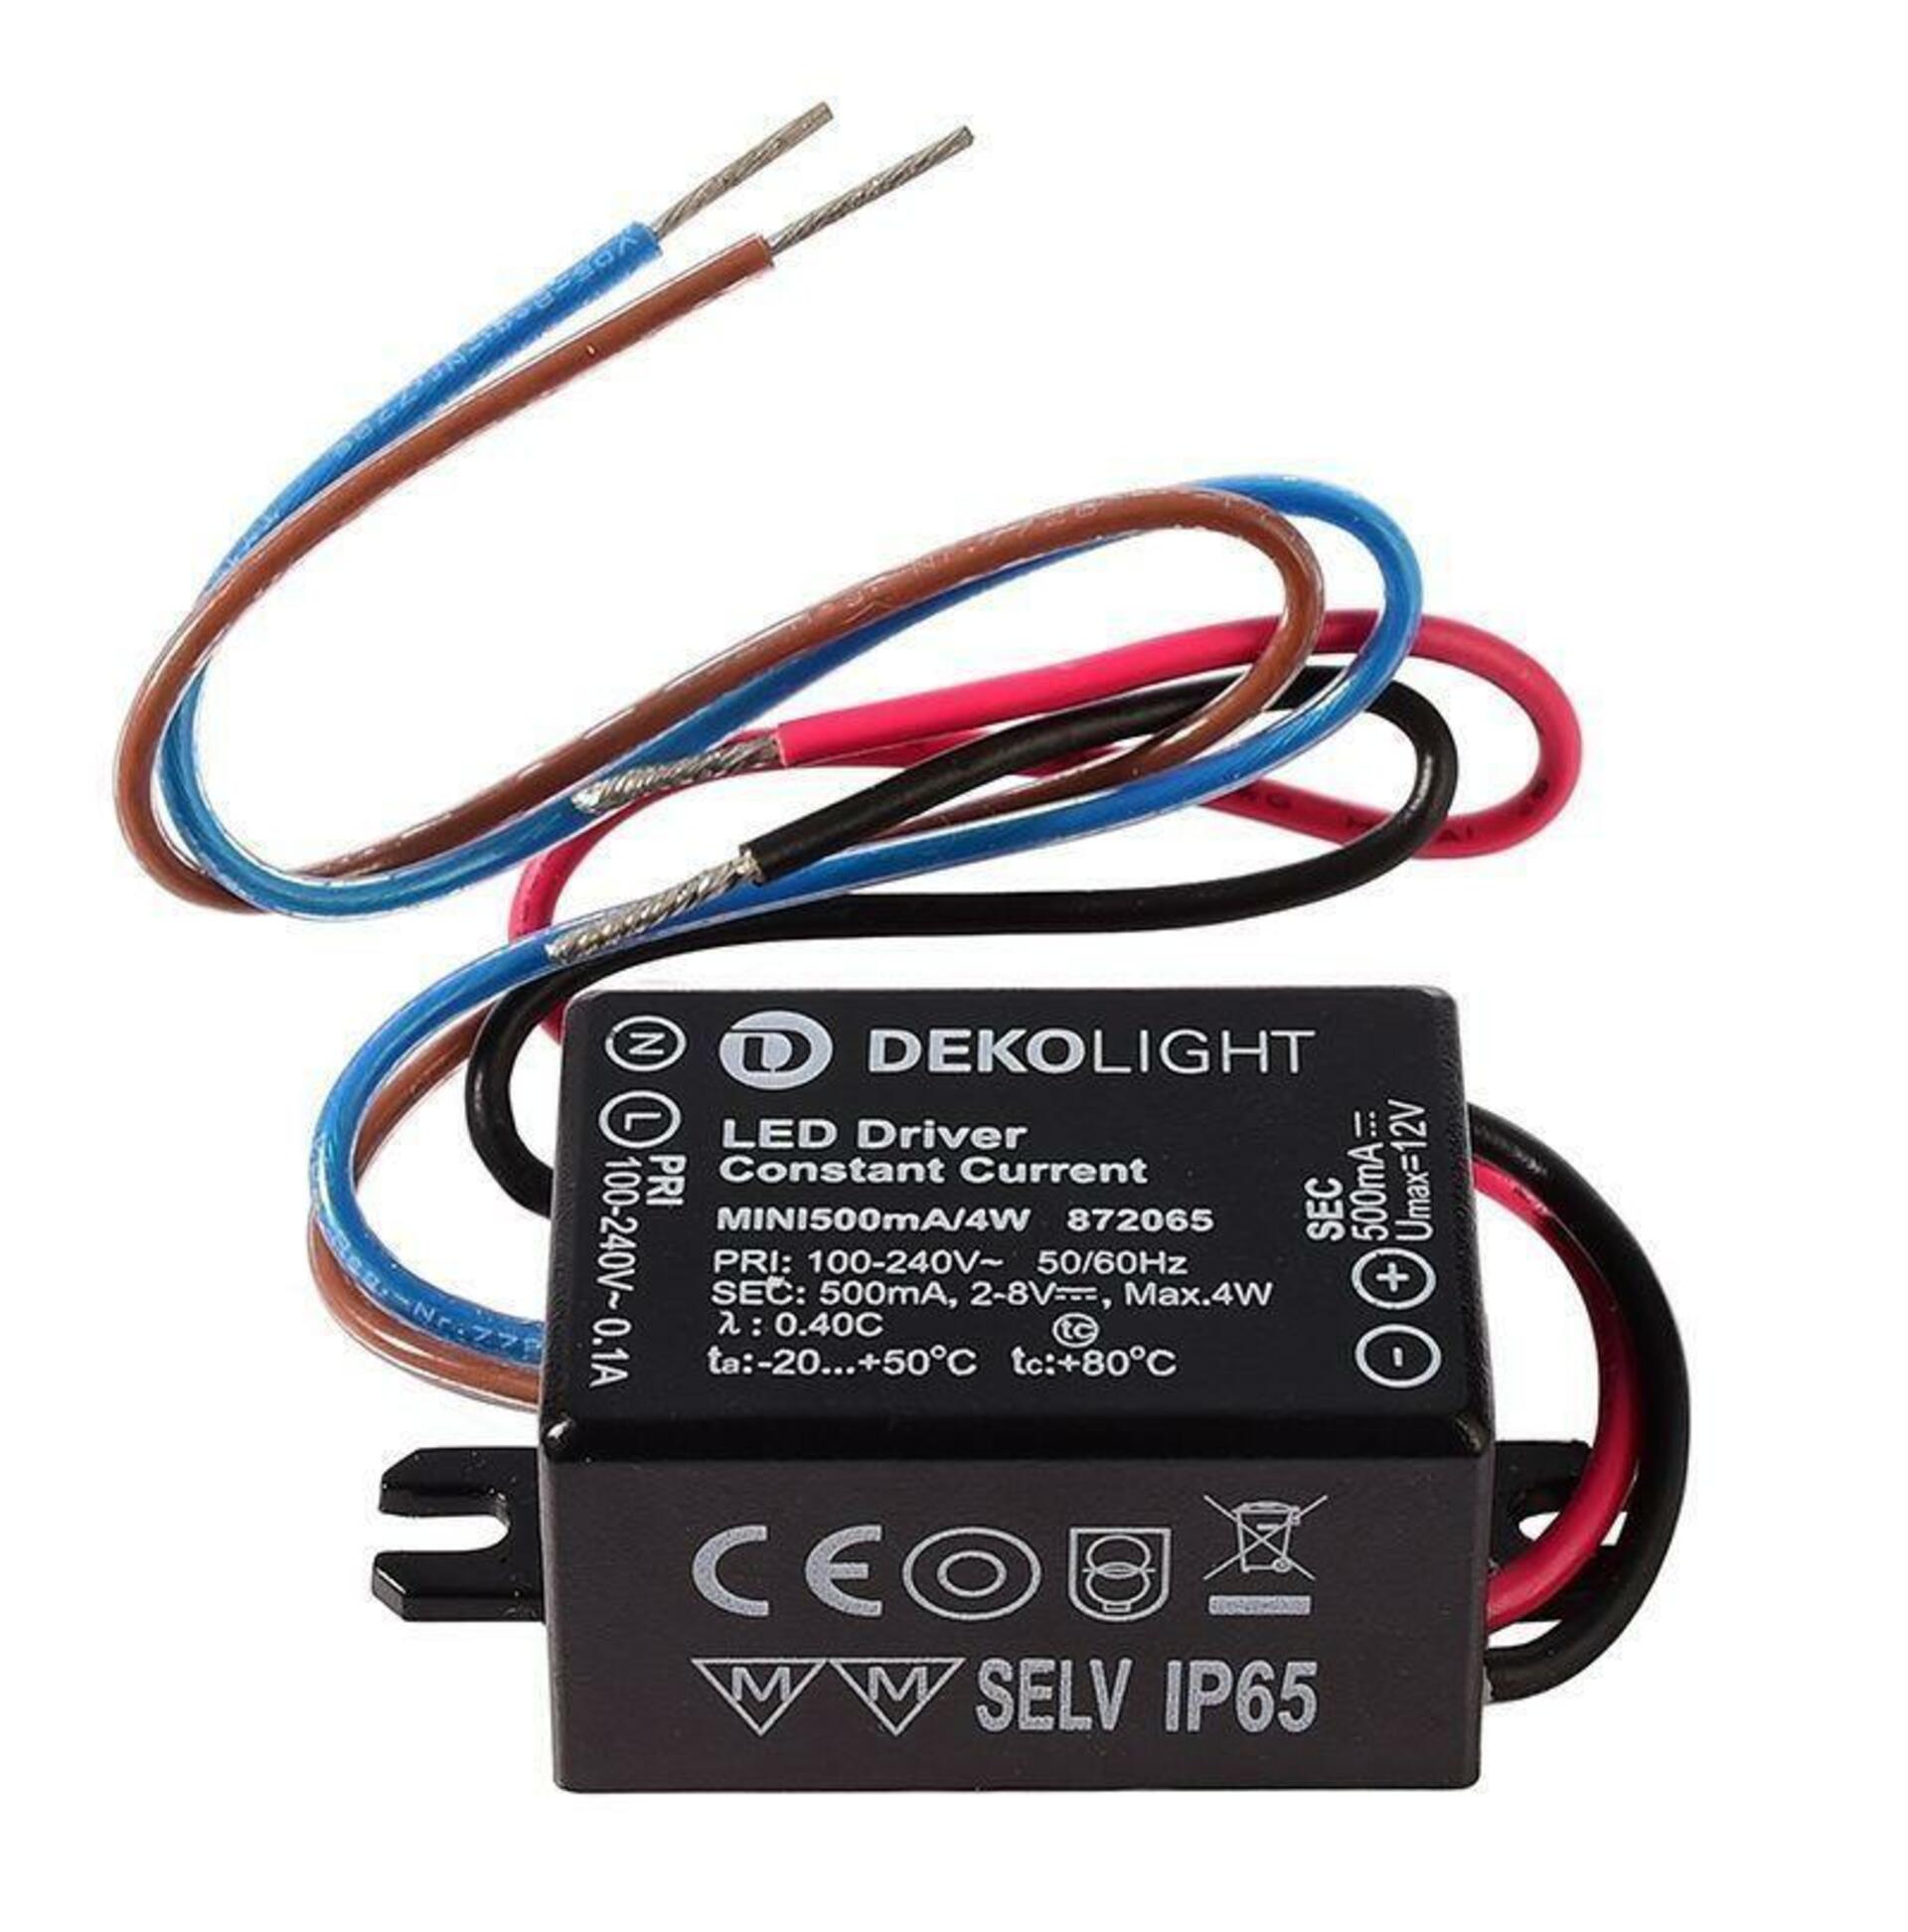 Light Impressions Deko-Light napájení MINI, 500mA/4W konstantní proud 500 mA IP65 2-8V DC 4,00 W 872065